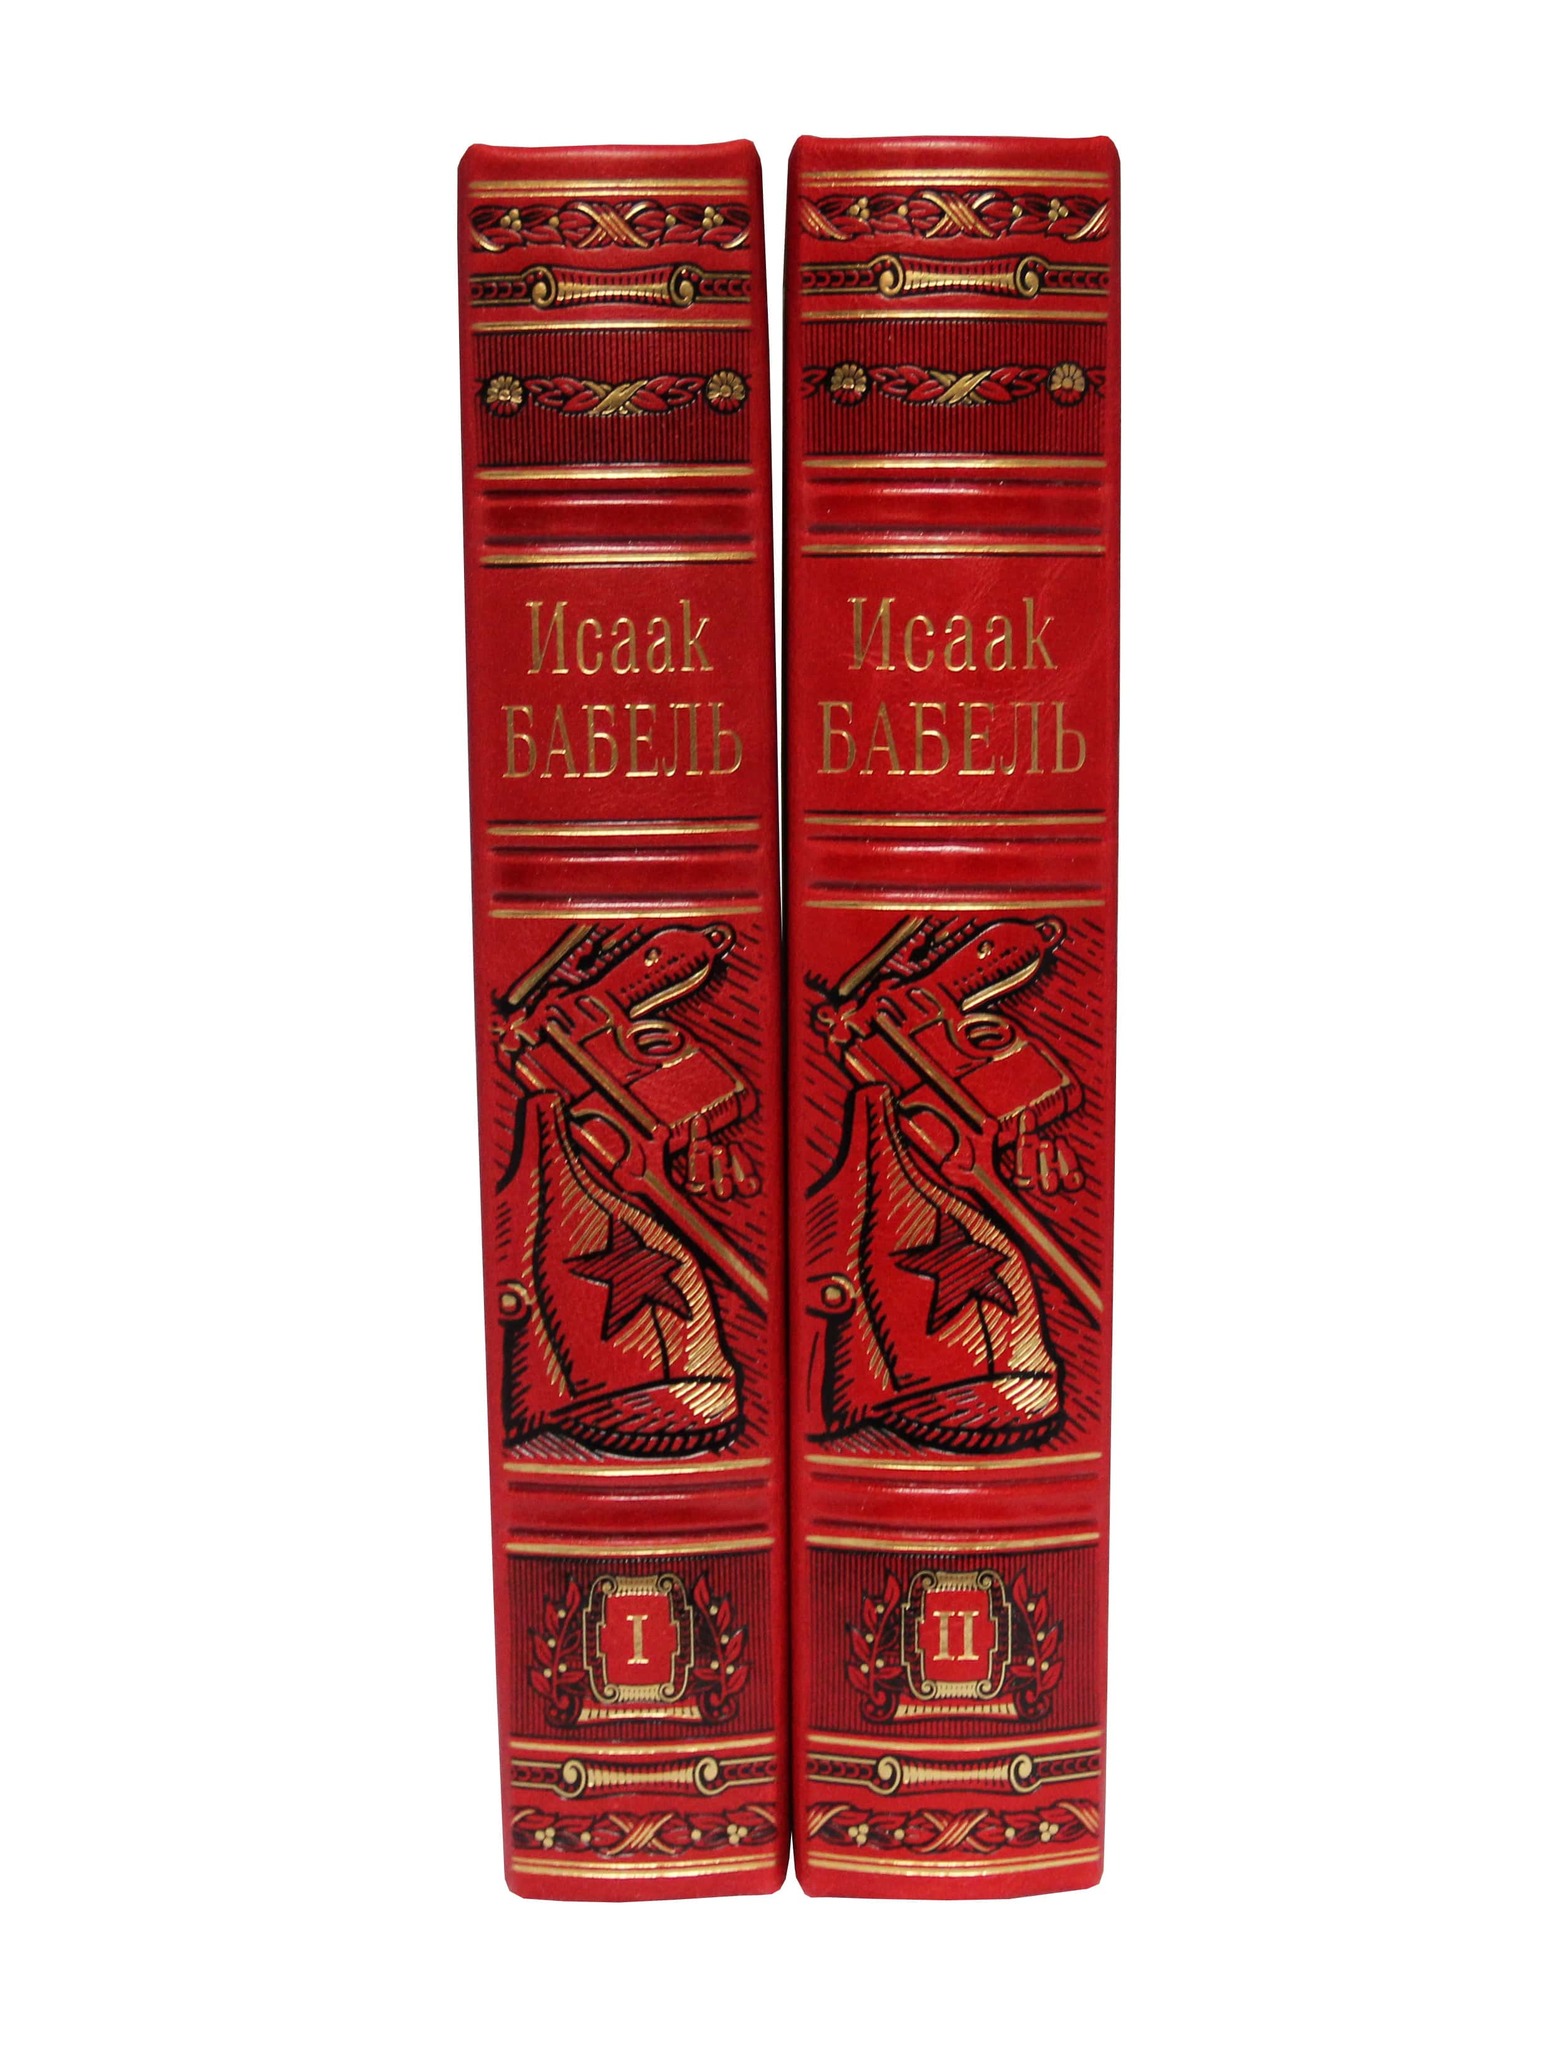 Бабель И. Собрание сочинений в 2 томах